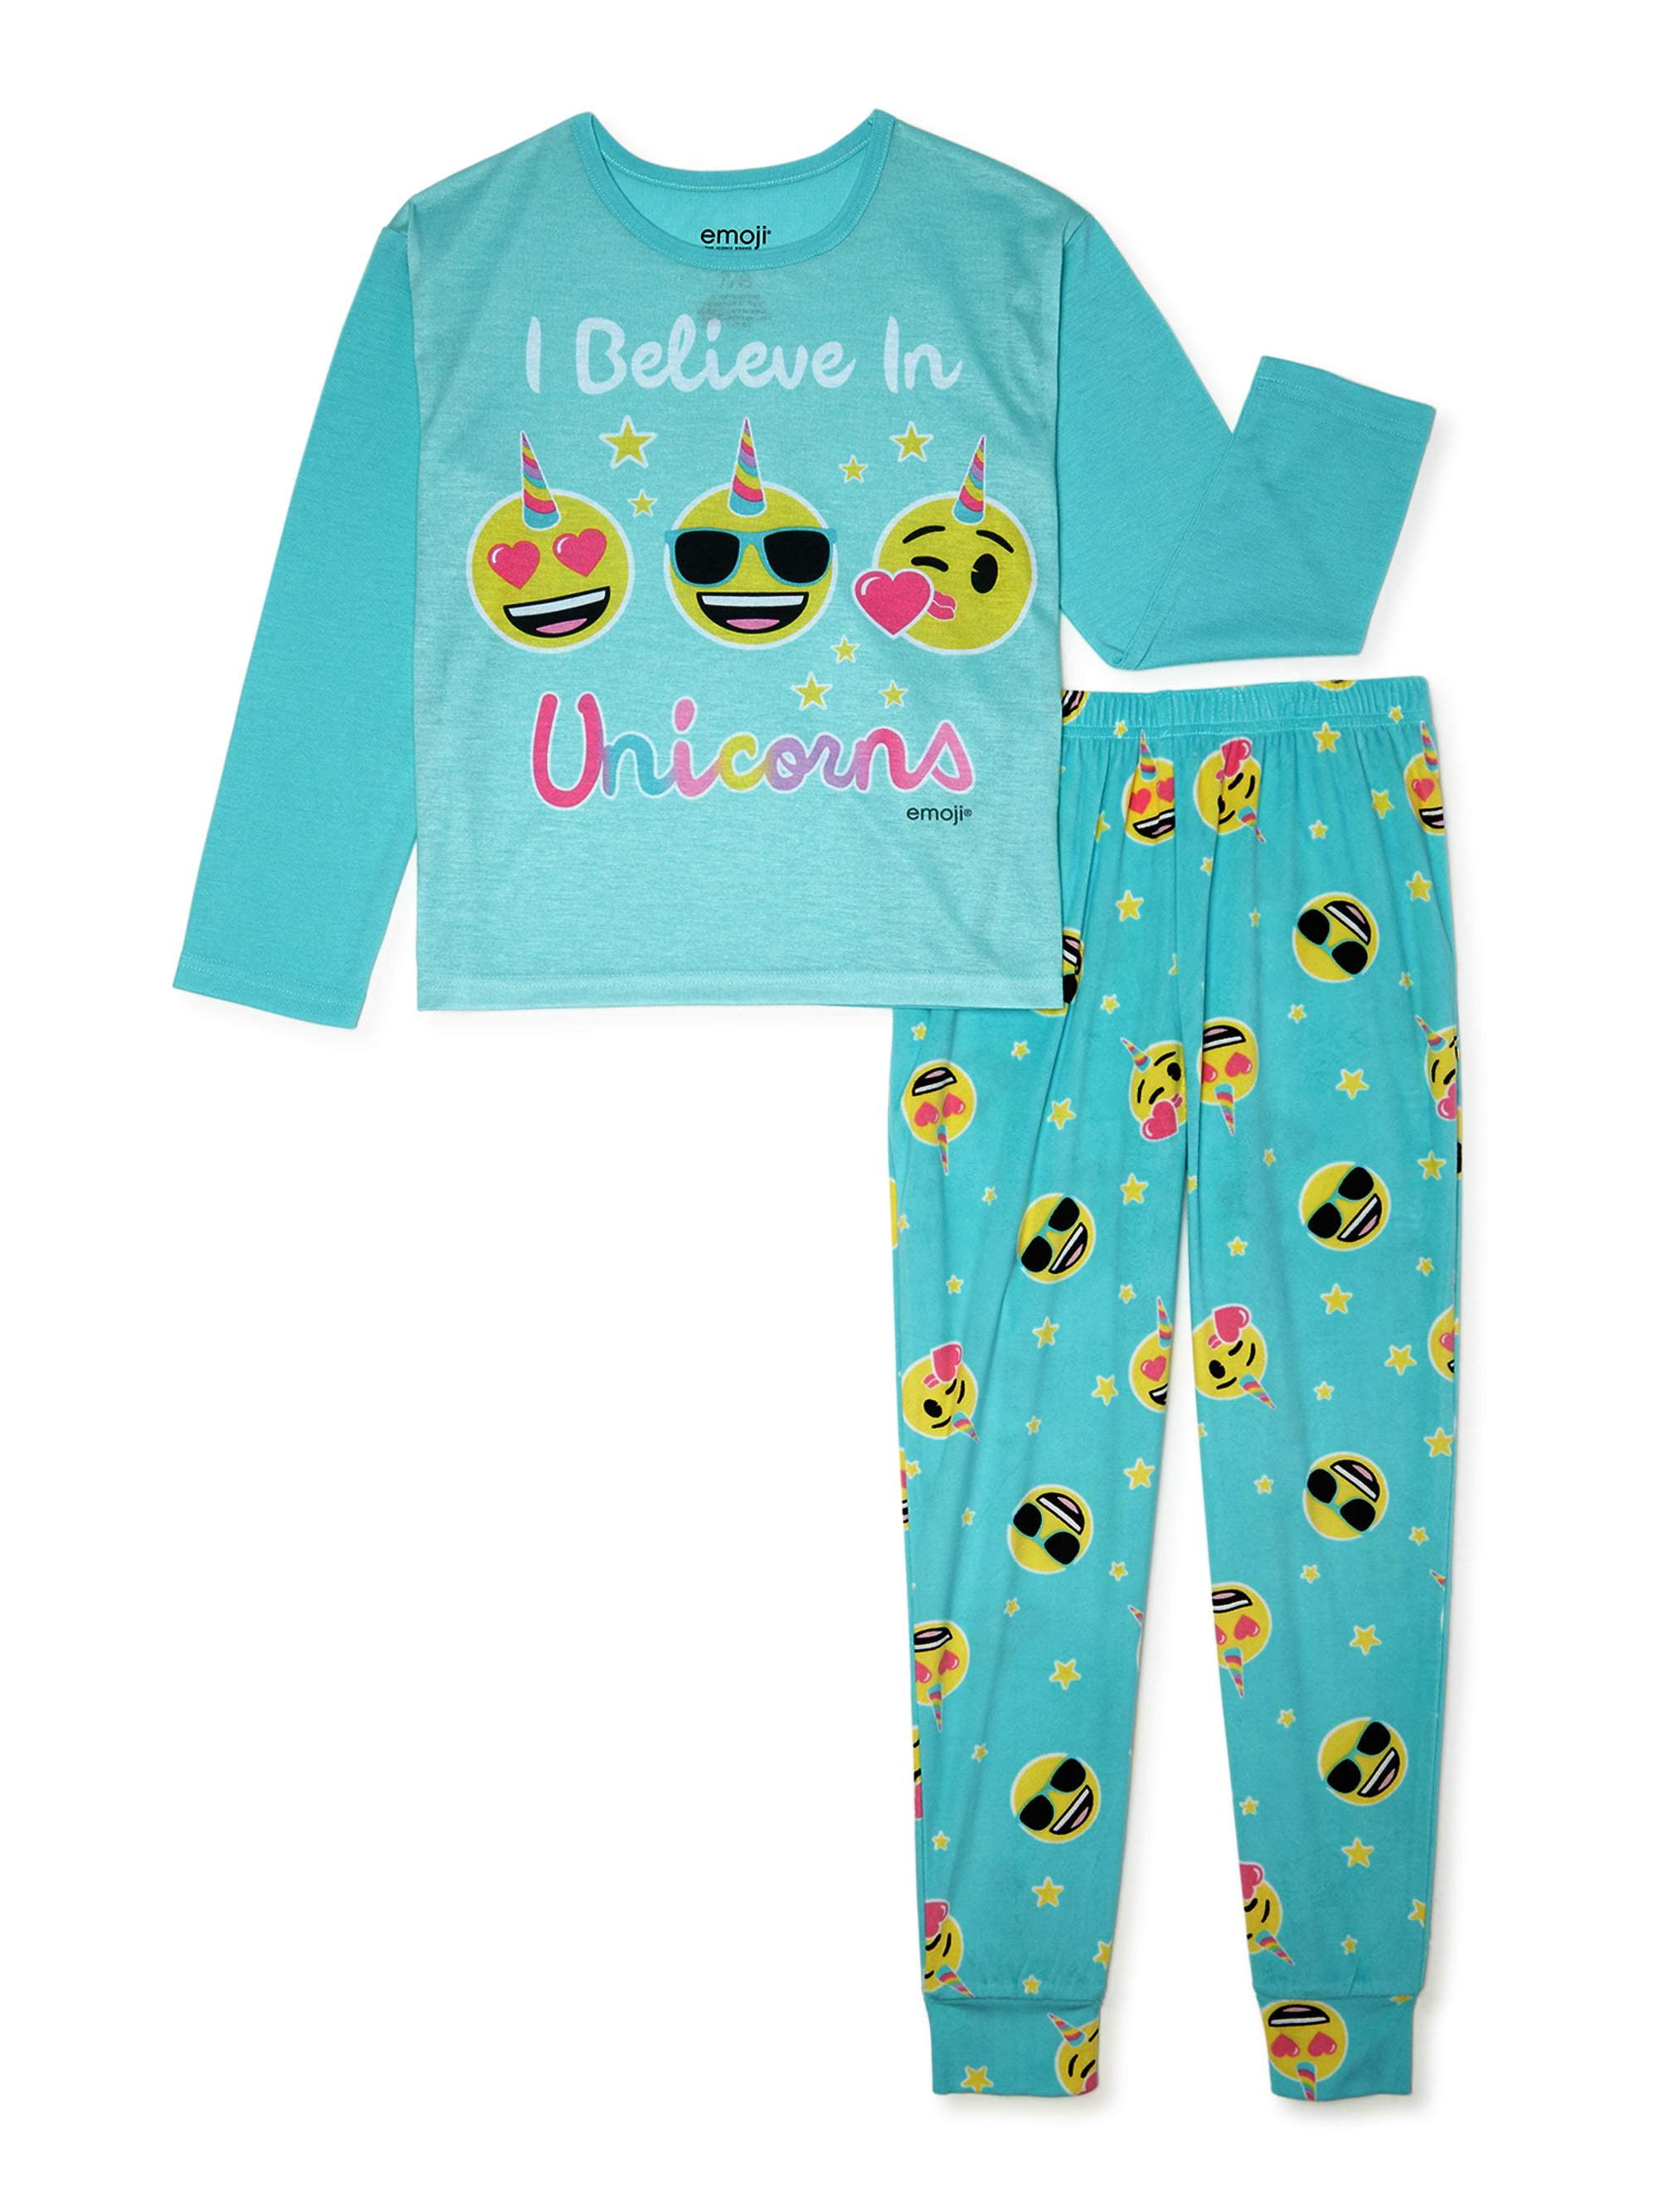 Brand New Girls Official Emoji Flannel Pajamas 2 piece Sleep wear Set Size 6/6X 